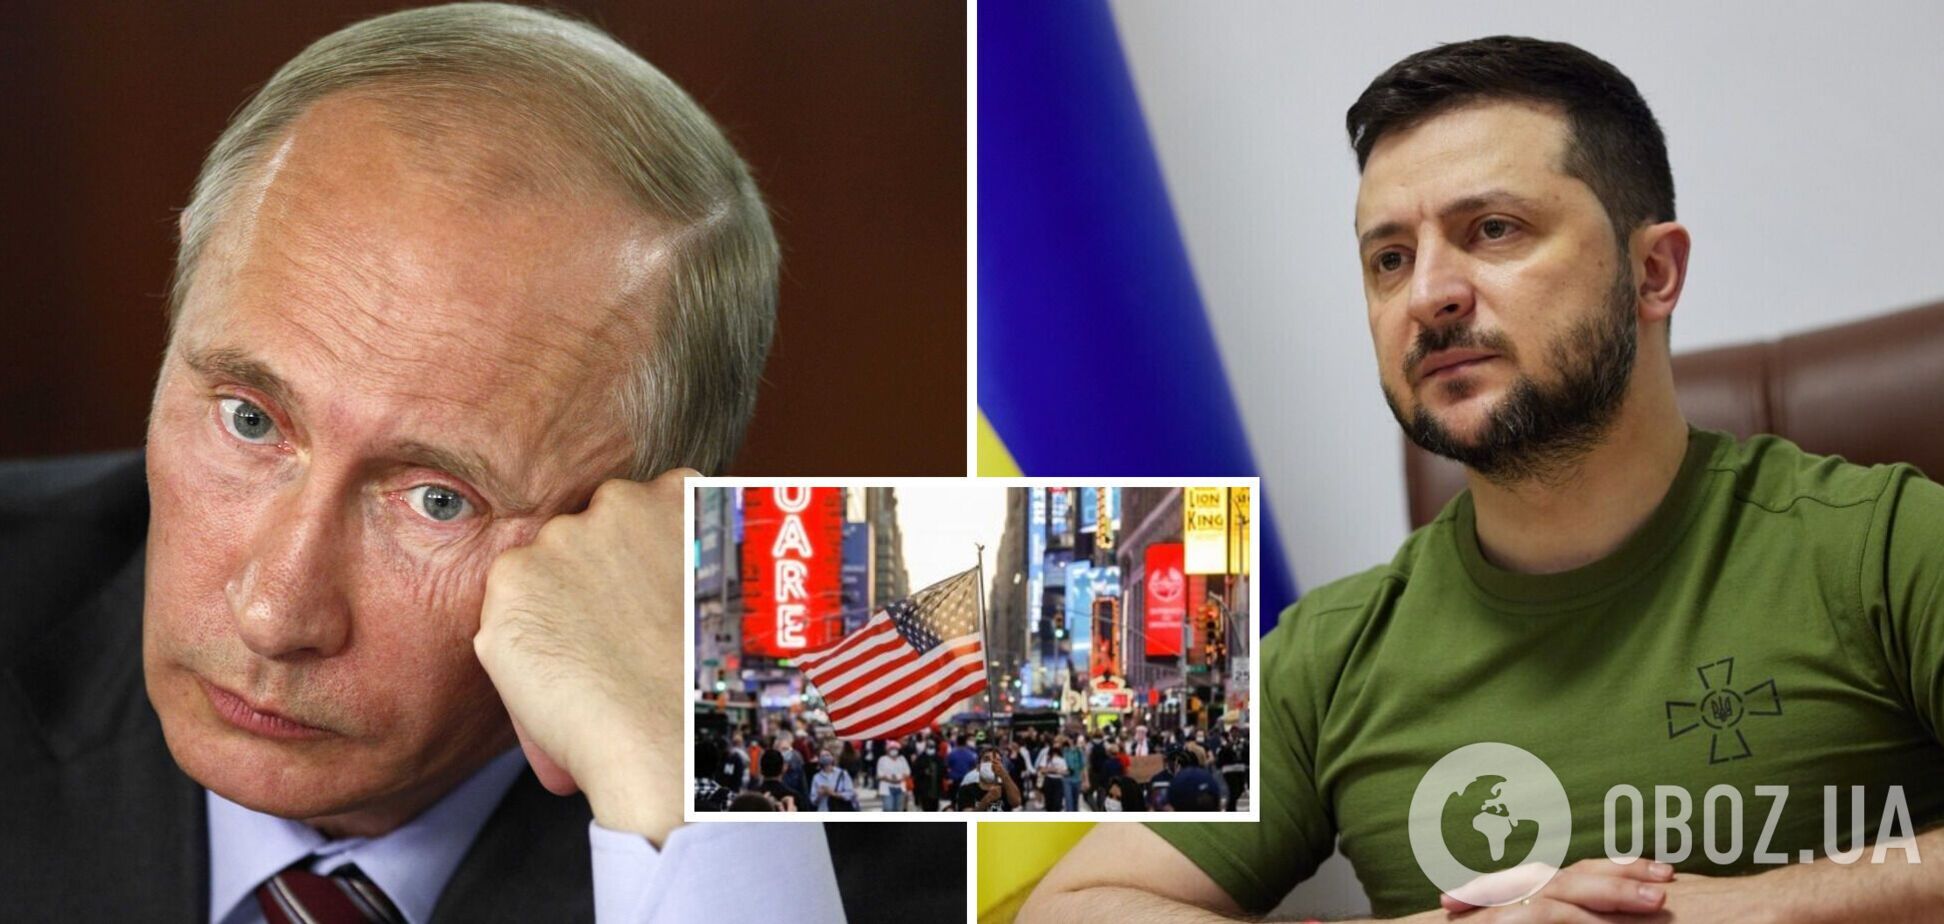 Зеленський подобається американцям більше за Байдена і Трампа, а Путіна ненавидять 90%: опитування